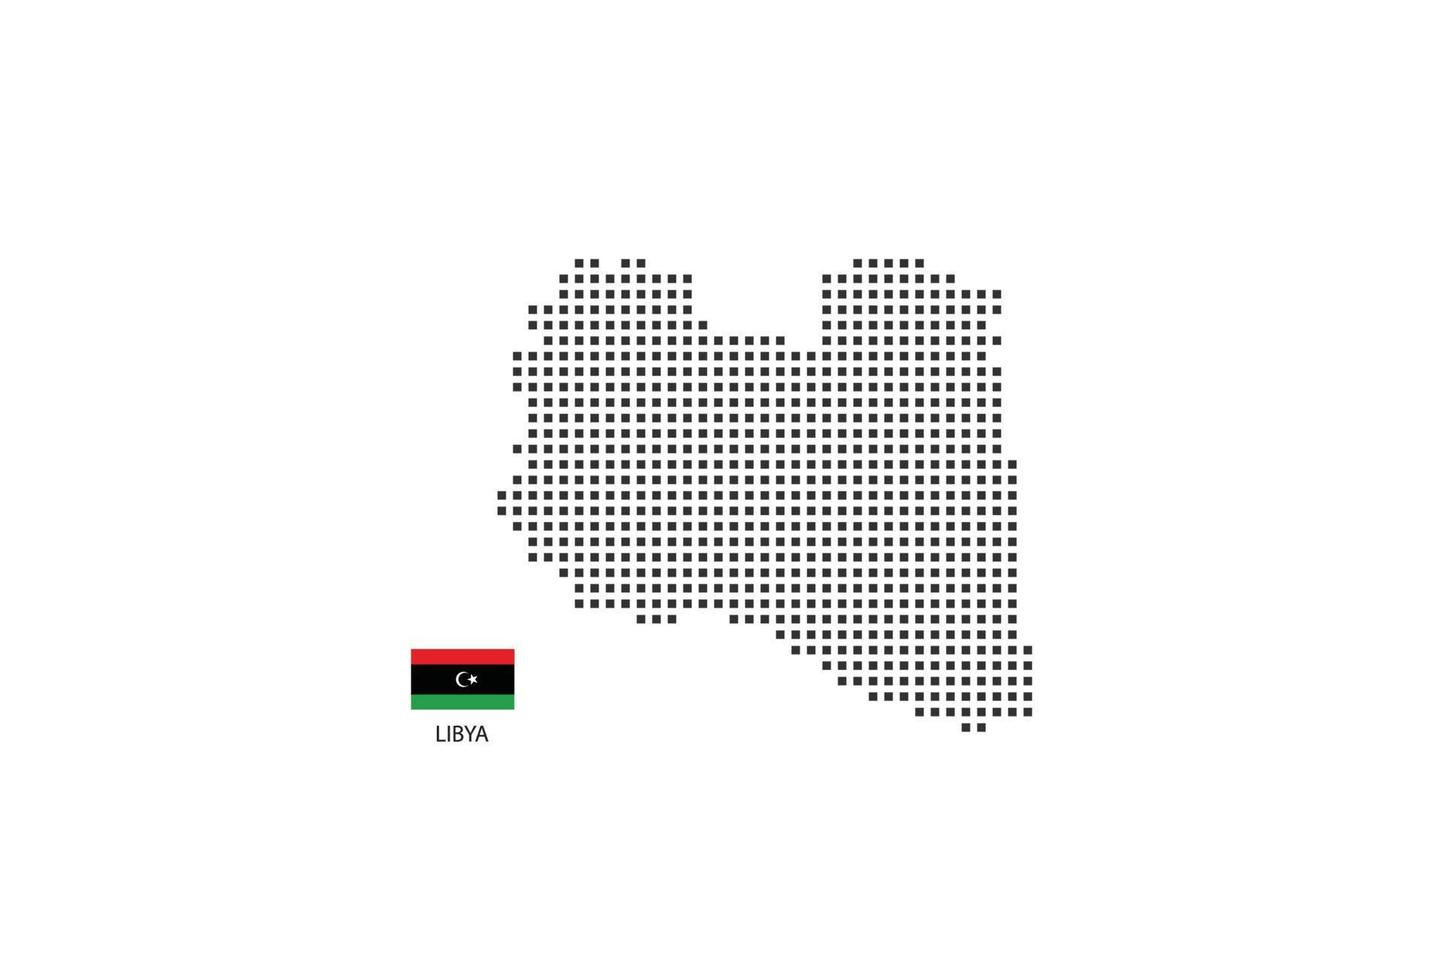 Vektor quadratische Pixel gepunktete Karte von Libyen isoliert auf weißem Hintergrund mit Libyen-Flagge.